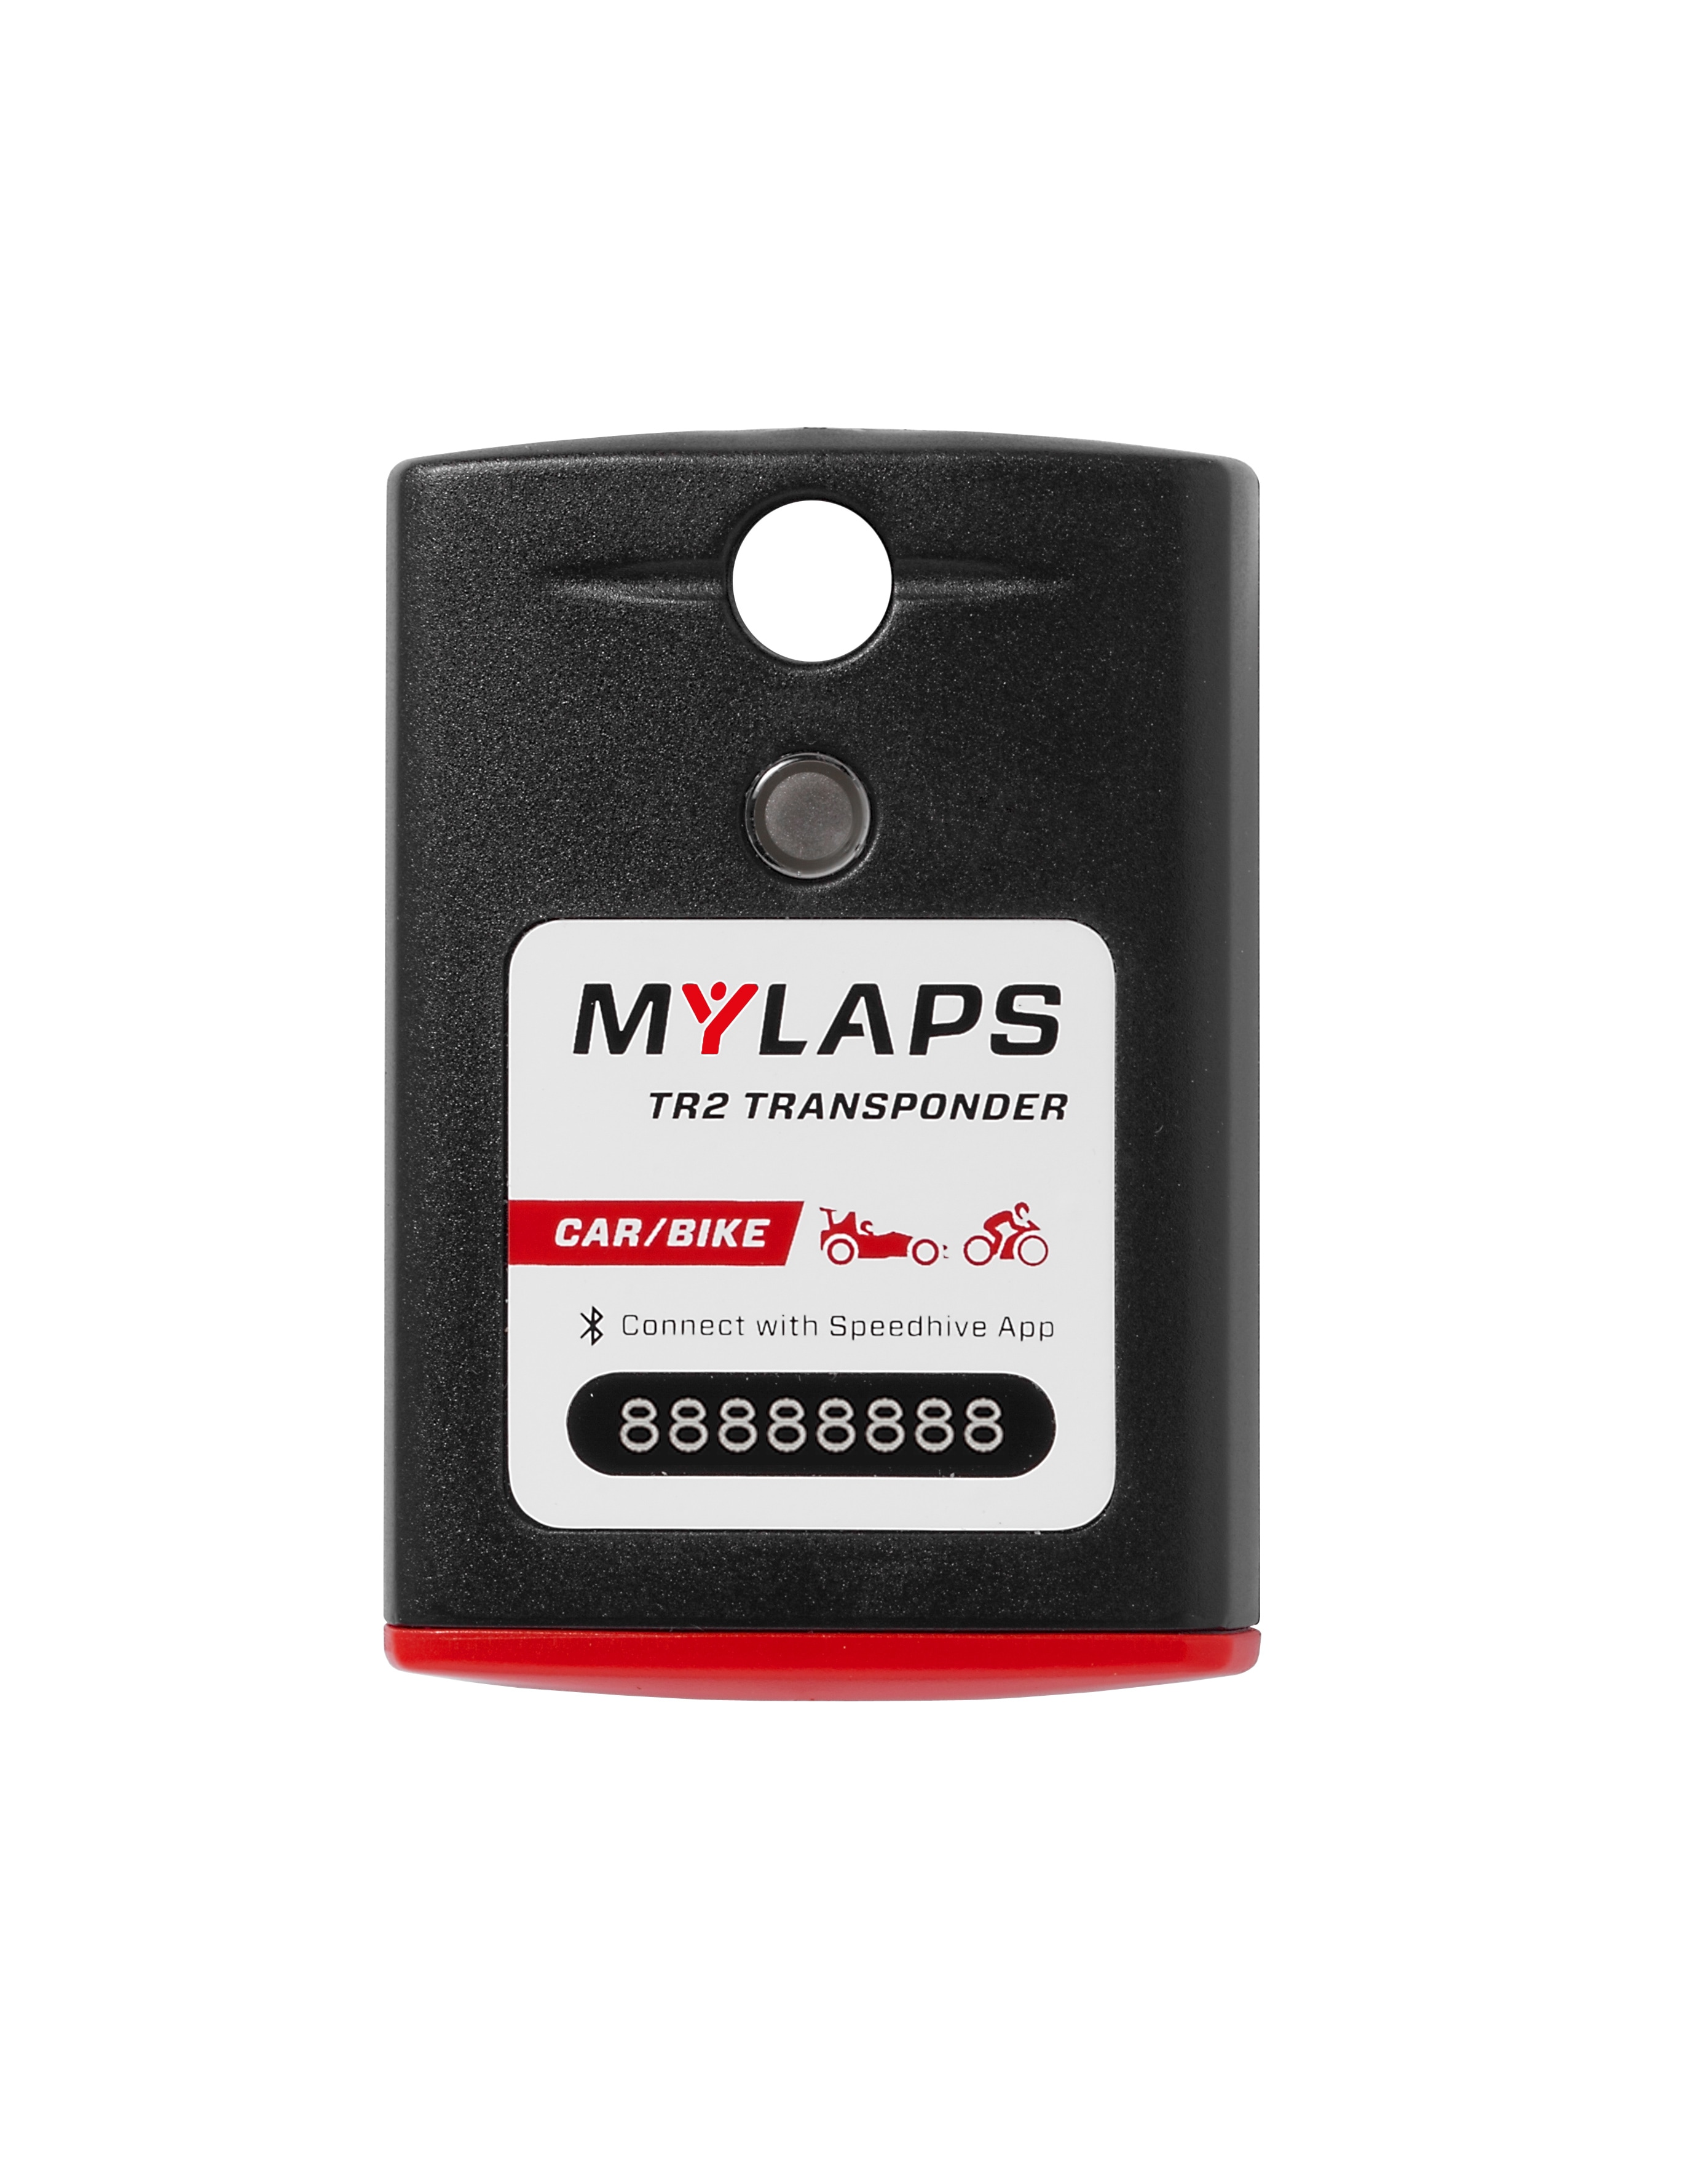 Transponderi MyLaps TR2, autoon/moottoripyörään 2 vuosi